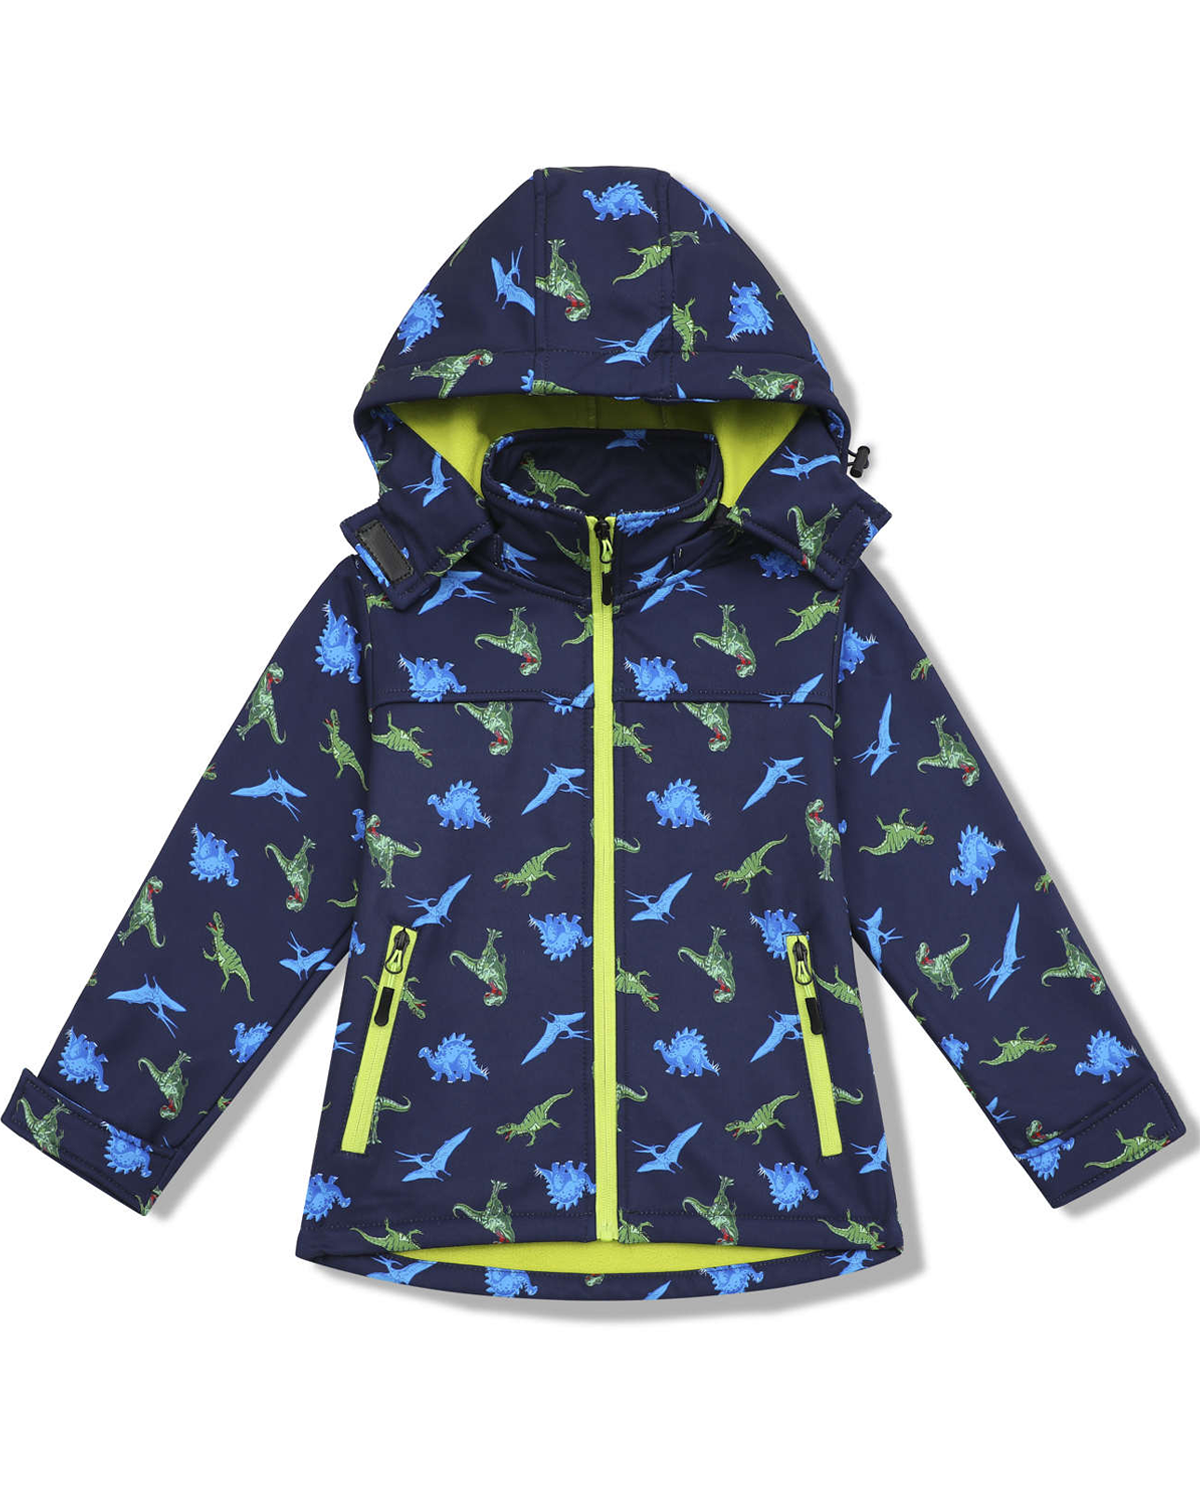 Chlapecká softshellová bunda, zateplená - KUGO HB8628, tmavě modrá Barva: Modrá tmavě, Velikost: 98